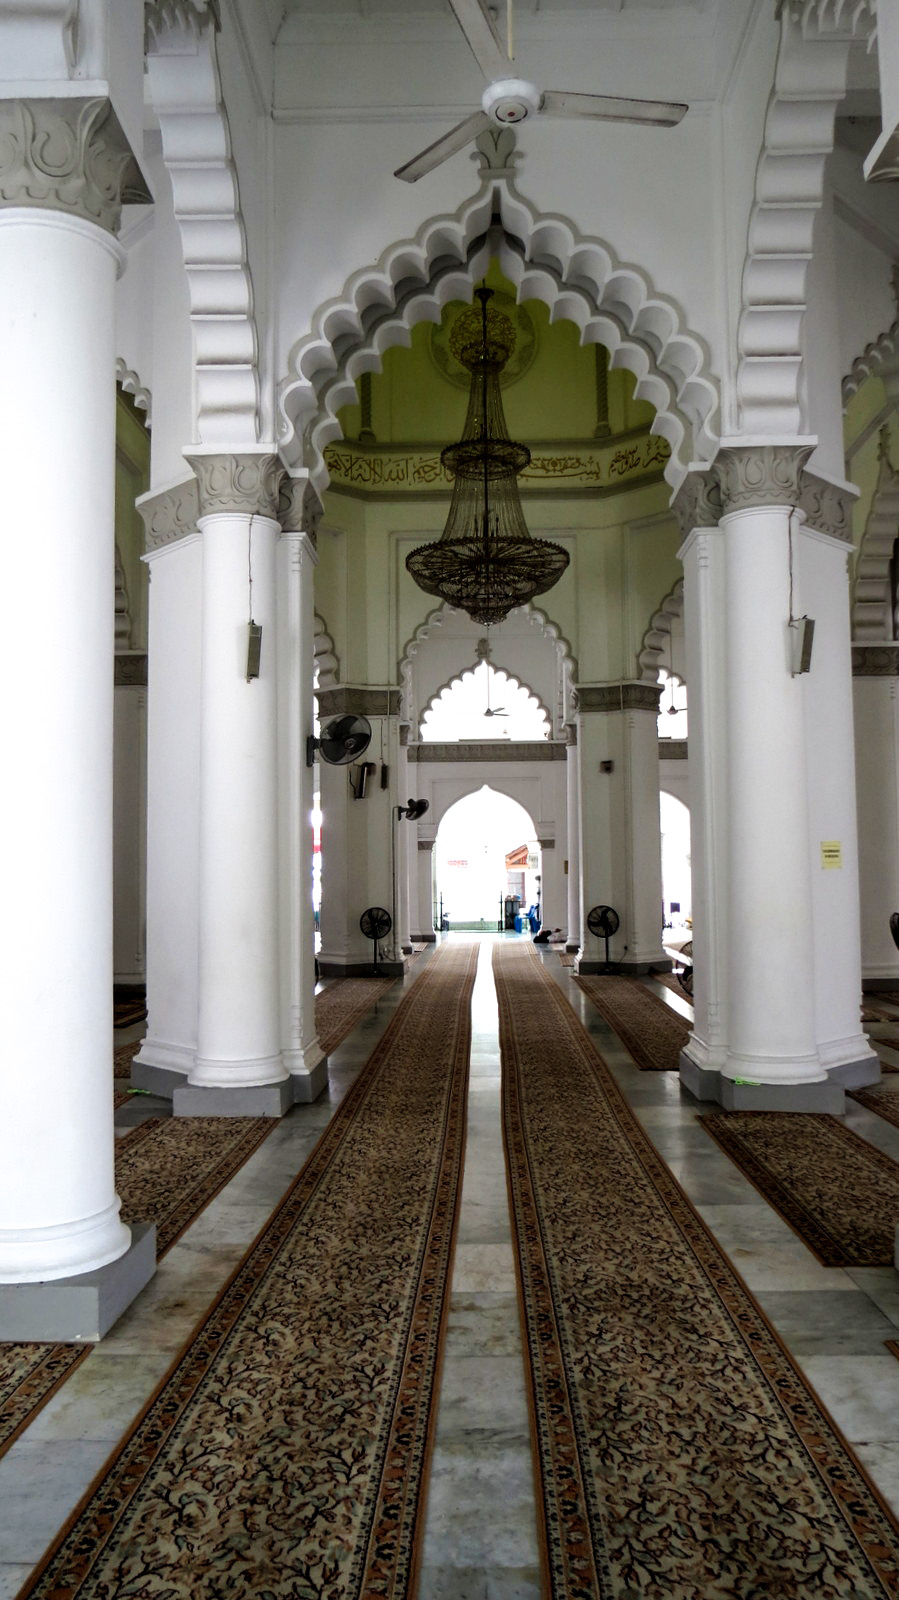 kapitan-keling-mosque-penang-interior